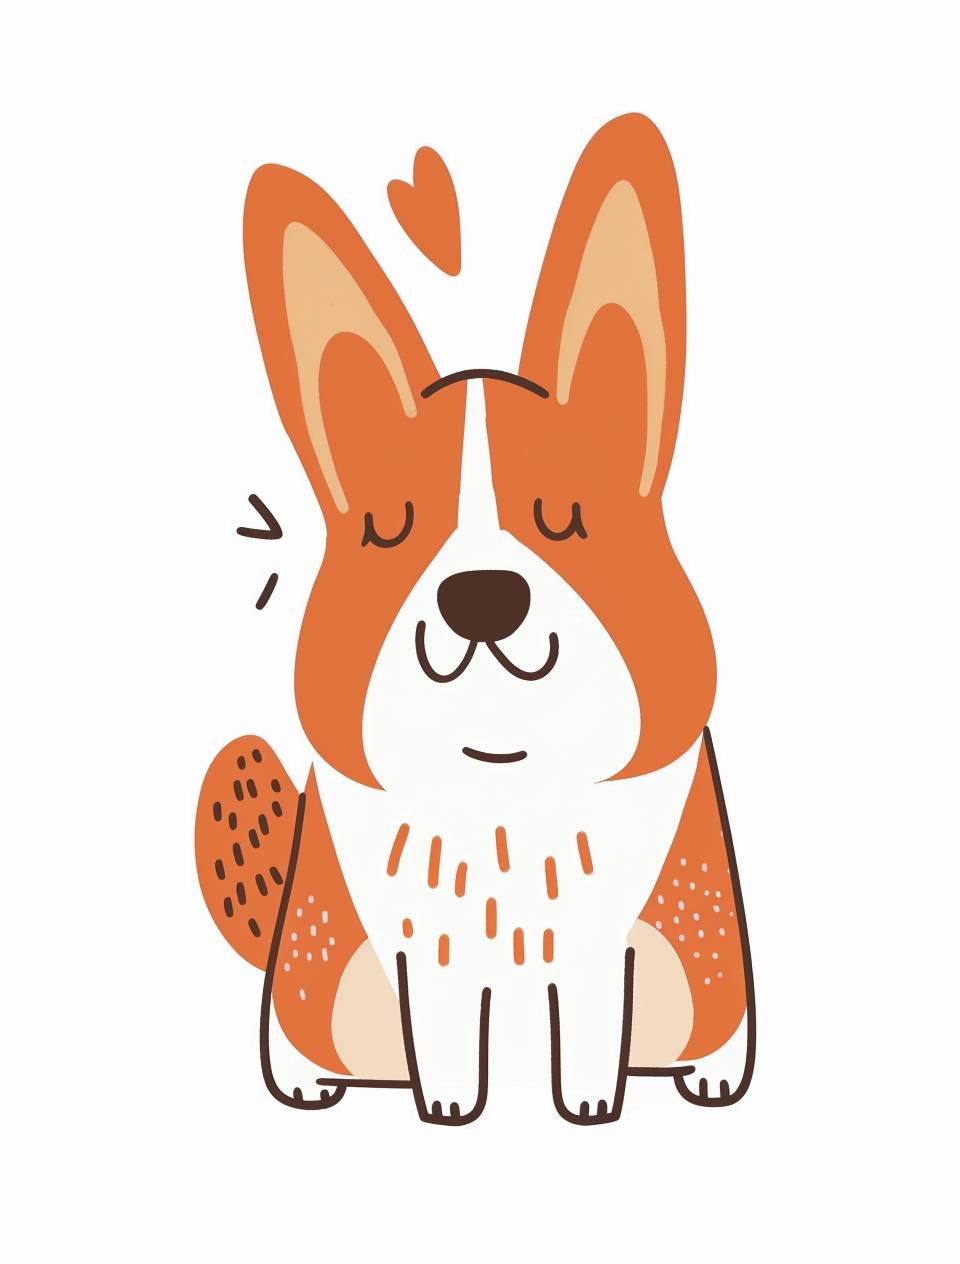 オレンジと白のコーギー犬をシンプルな形状で描いたかわいいシンプルなイラストです。手書きの太い線で、竹正涼のスタイルで描かれた白い背景に、ハッピーな表情のカートゥーンキャラクターデザインがあります。